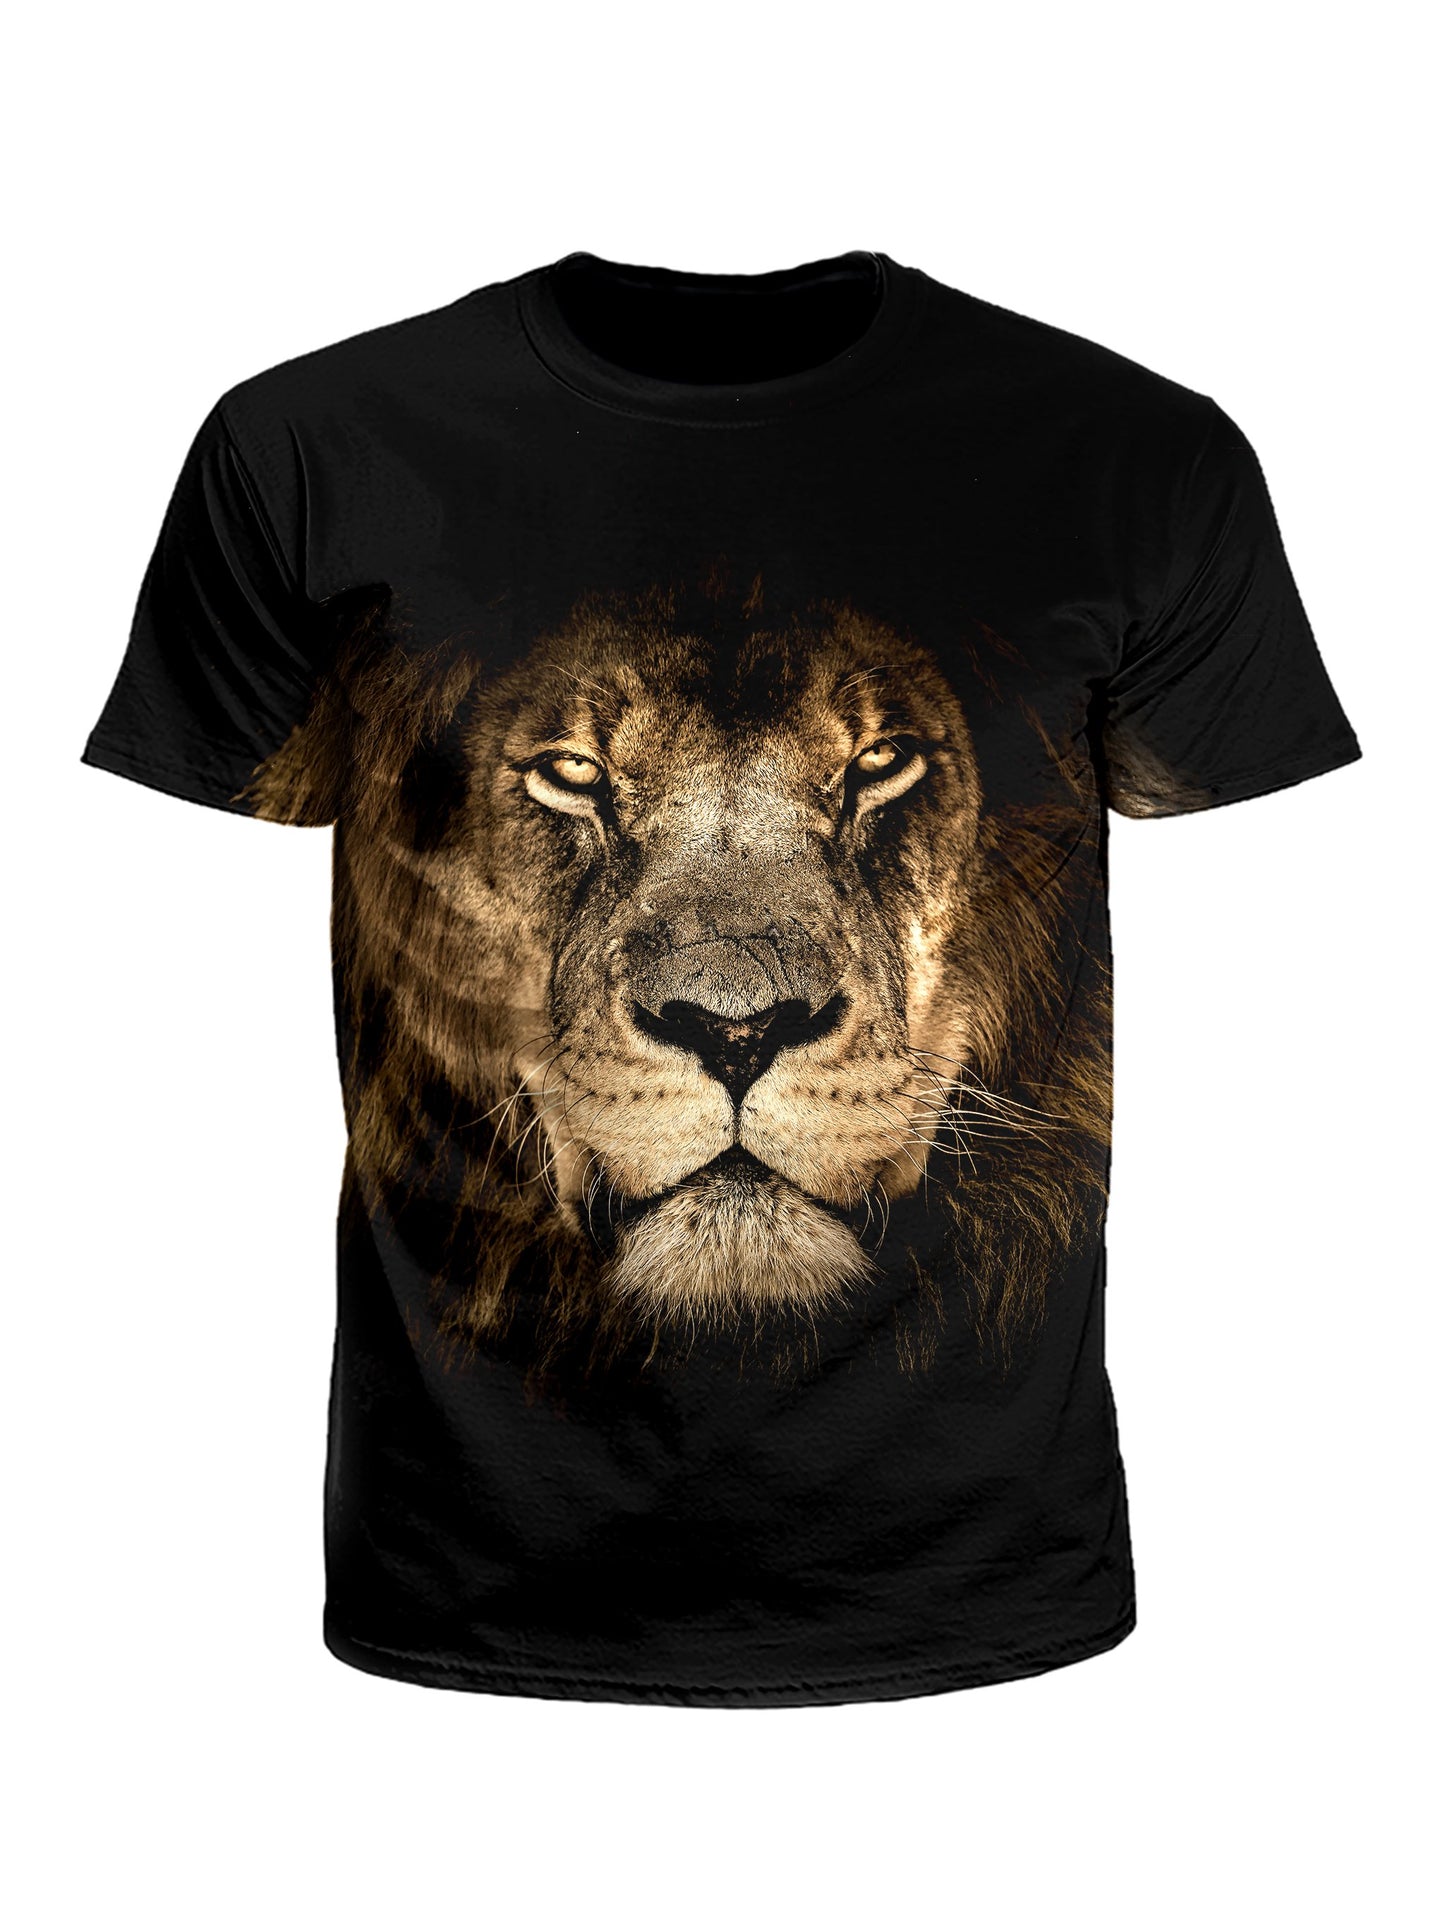 Men's black & brown lion unisex t-shirt front view.